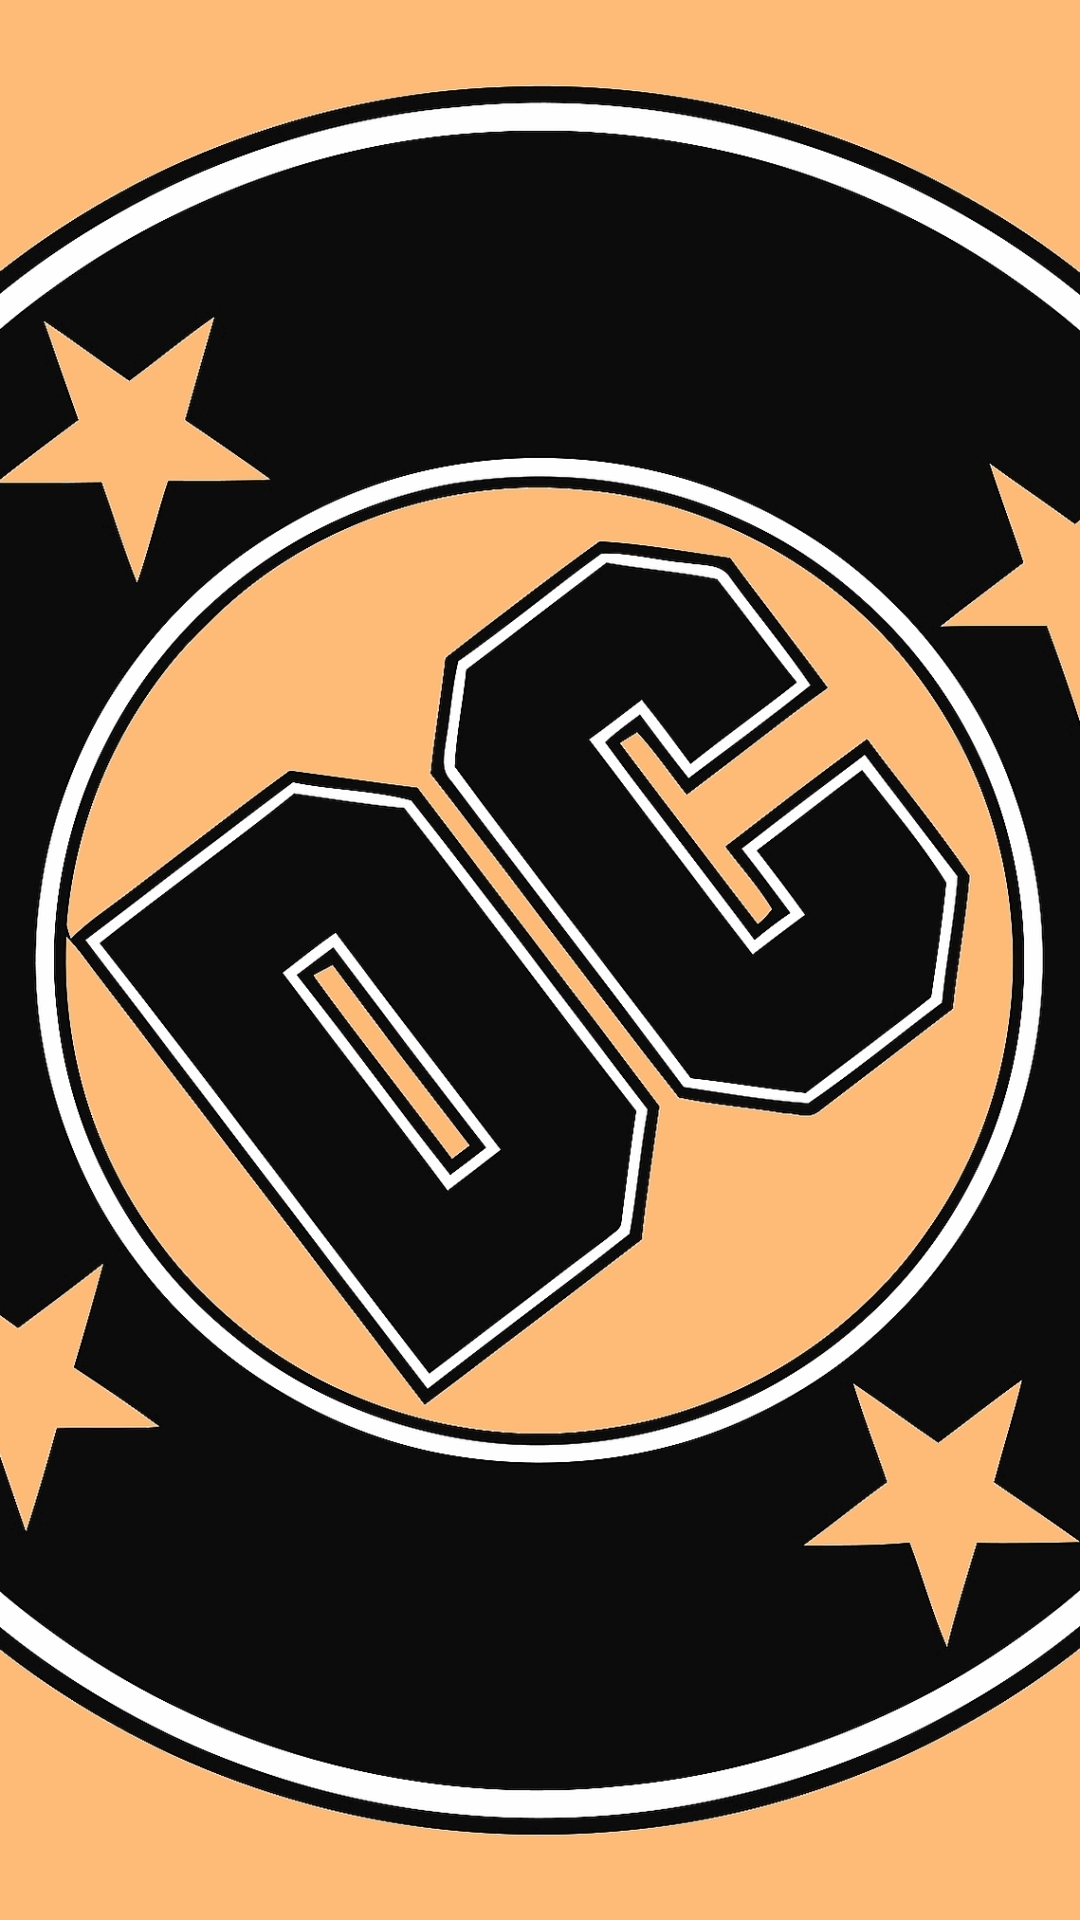 Comics / Dc Comics Mobile Wallpaper - Dc Comics Logo 1980 , HD Wallpaper & Backgrounds